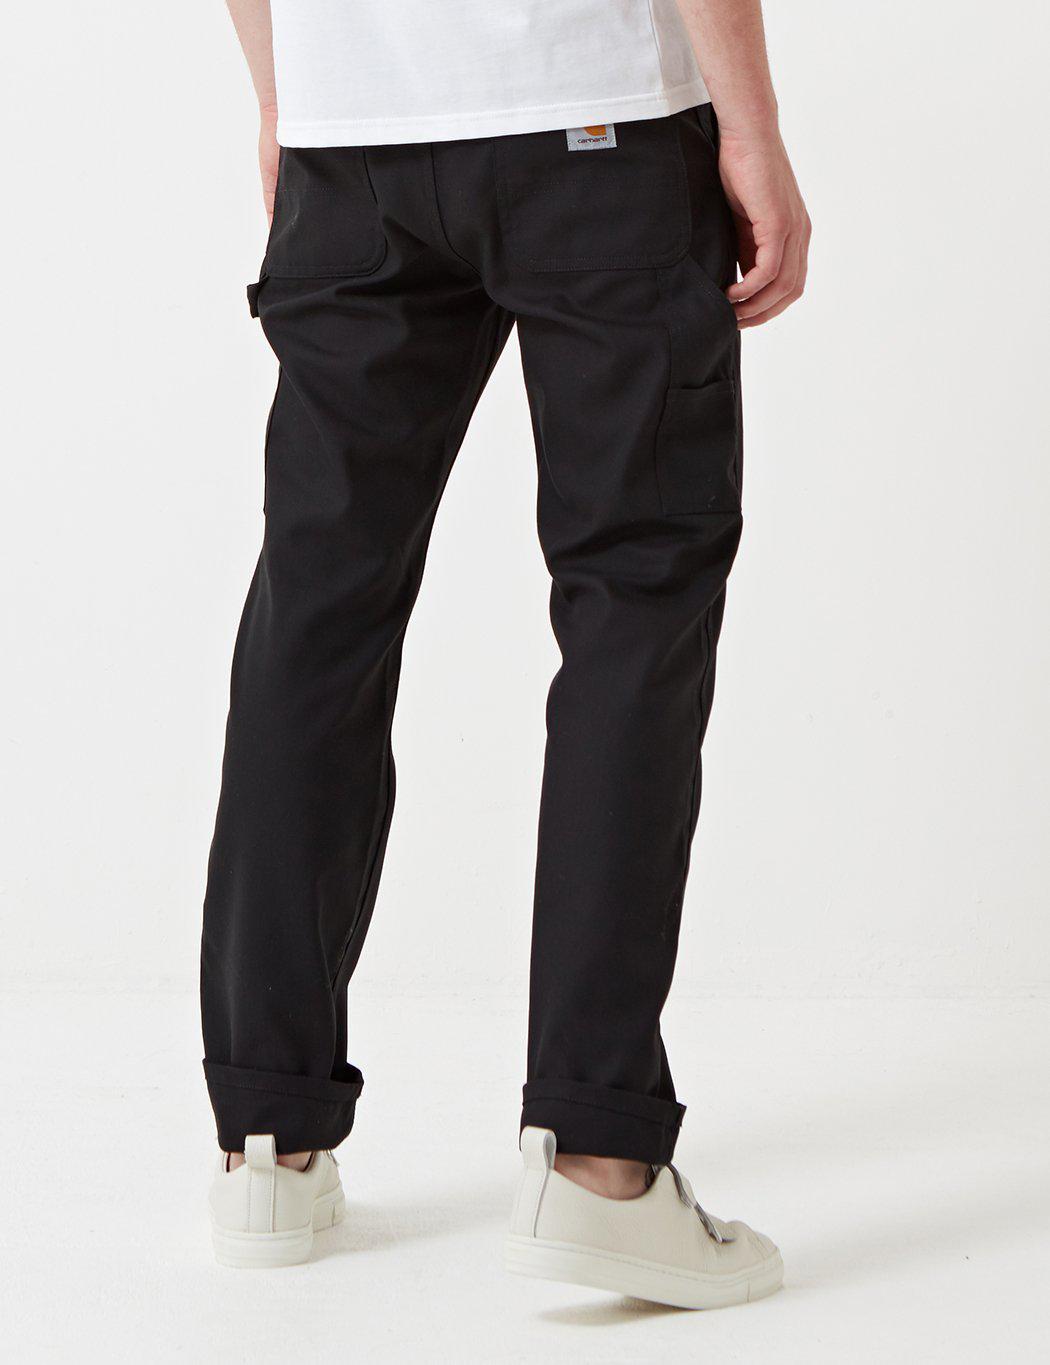 Lyst - Carhartt Ruck Single Knee Pant in Black for Men